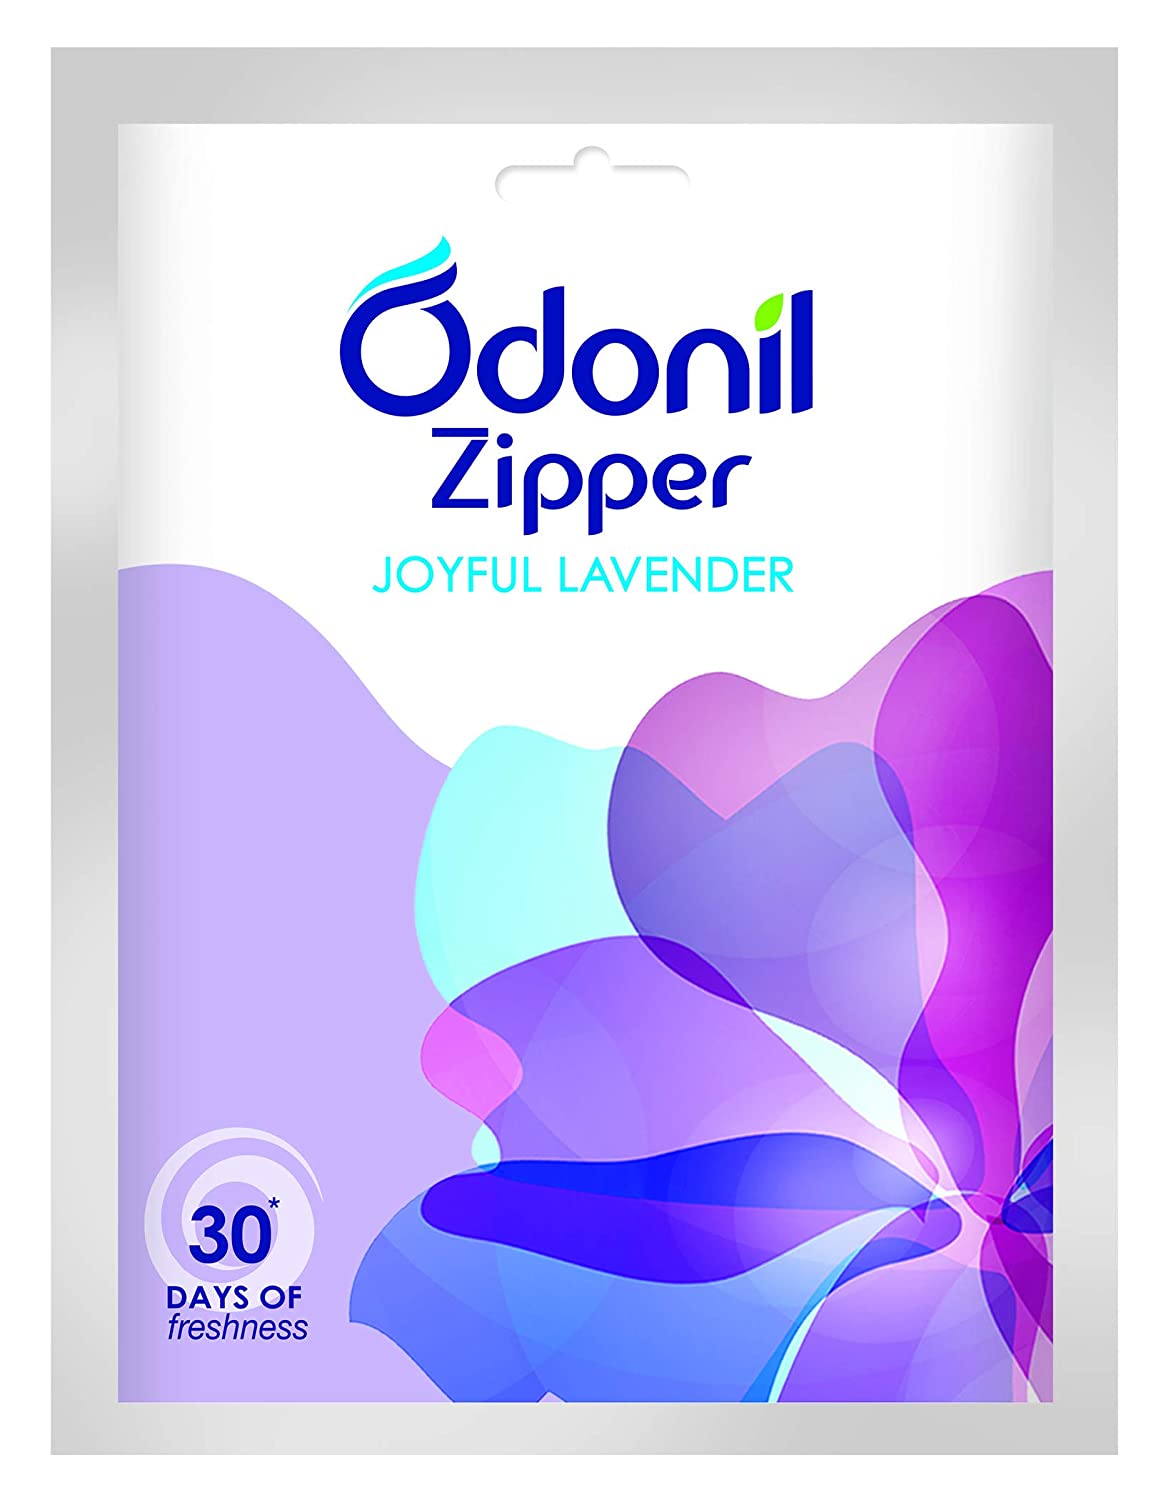 Odonil Zipper Joyful Lavender Air Freshner 10g